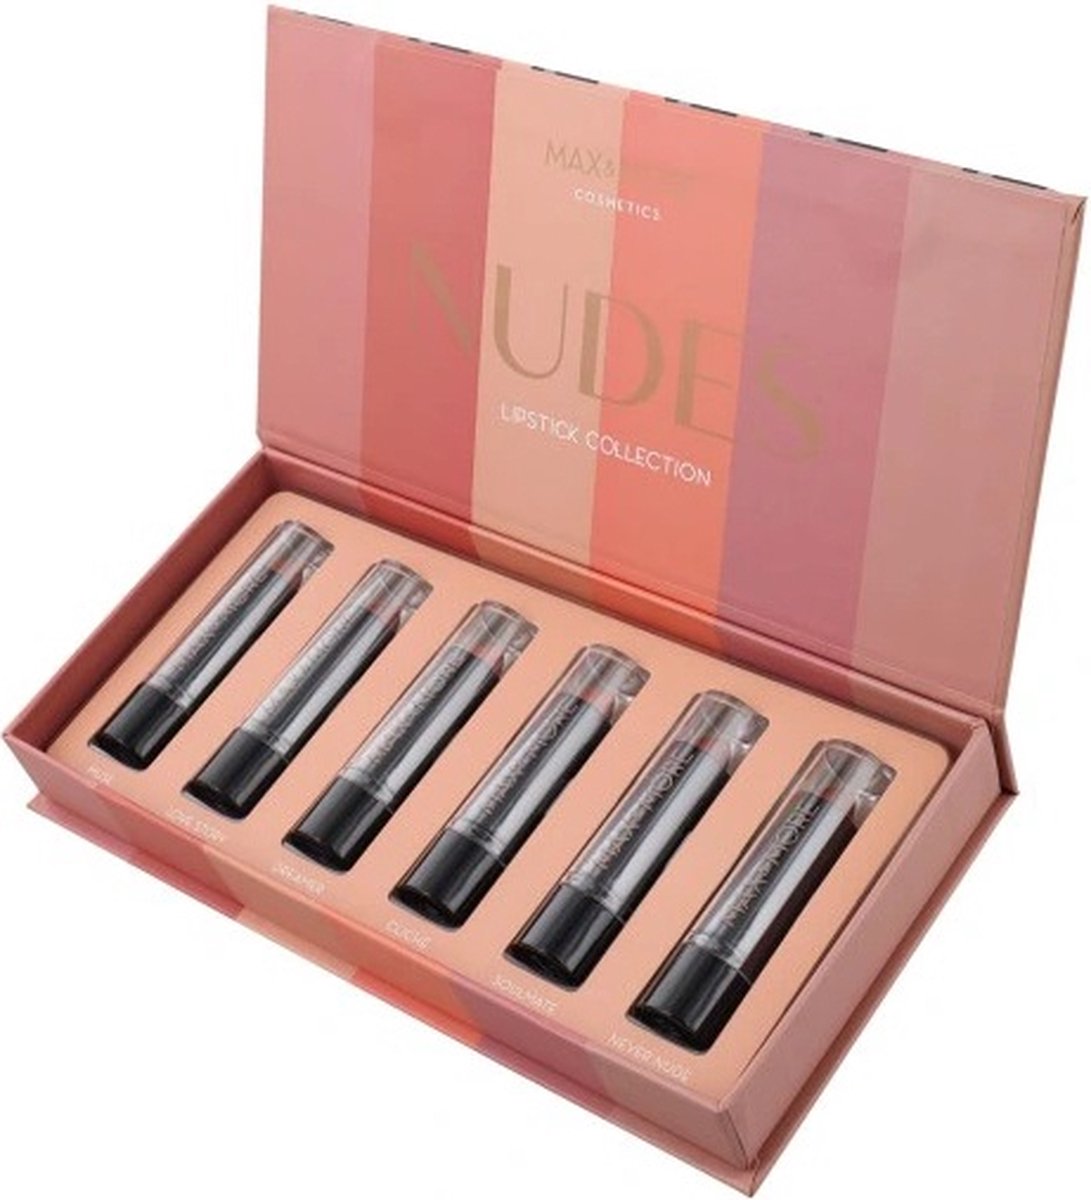 Lippenstift set (6 stuks in doos) - Make-up - Lipsticks - Gift set - Cadeaupakket